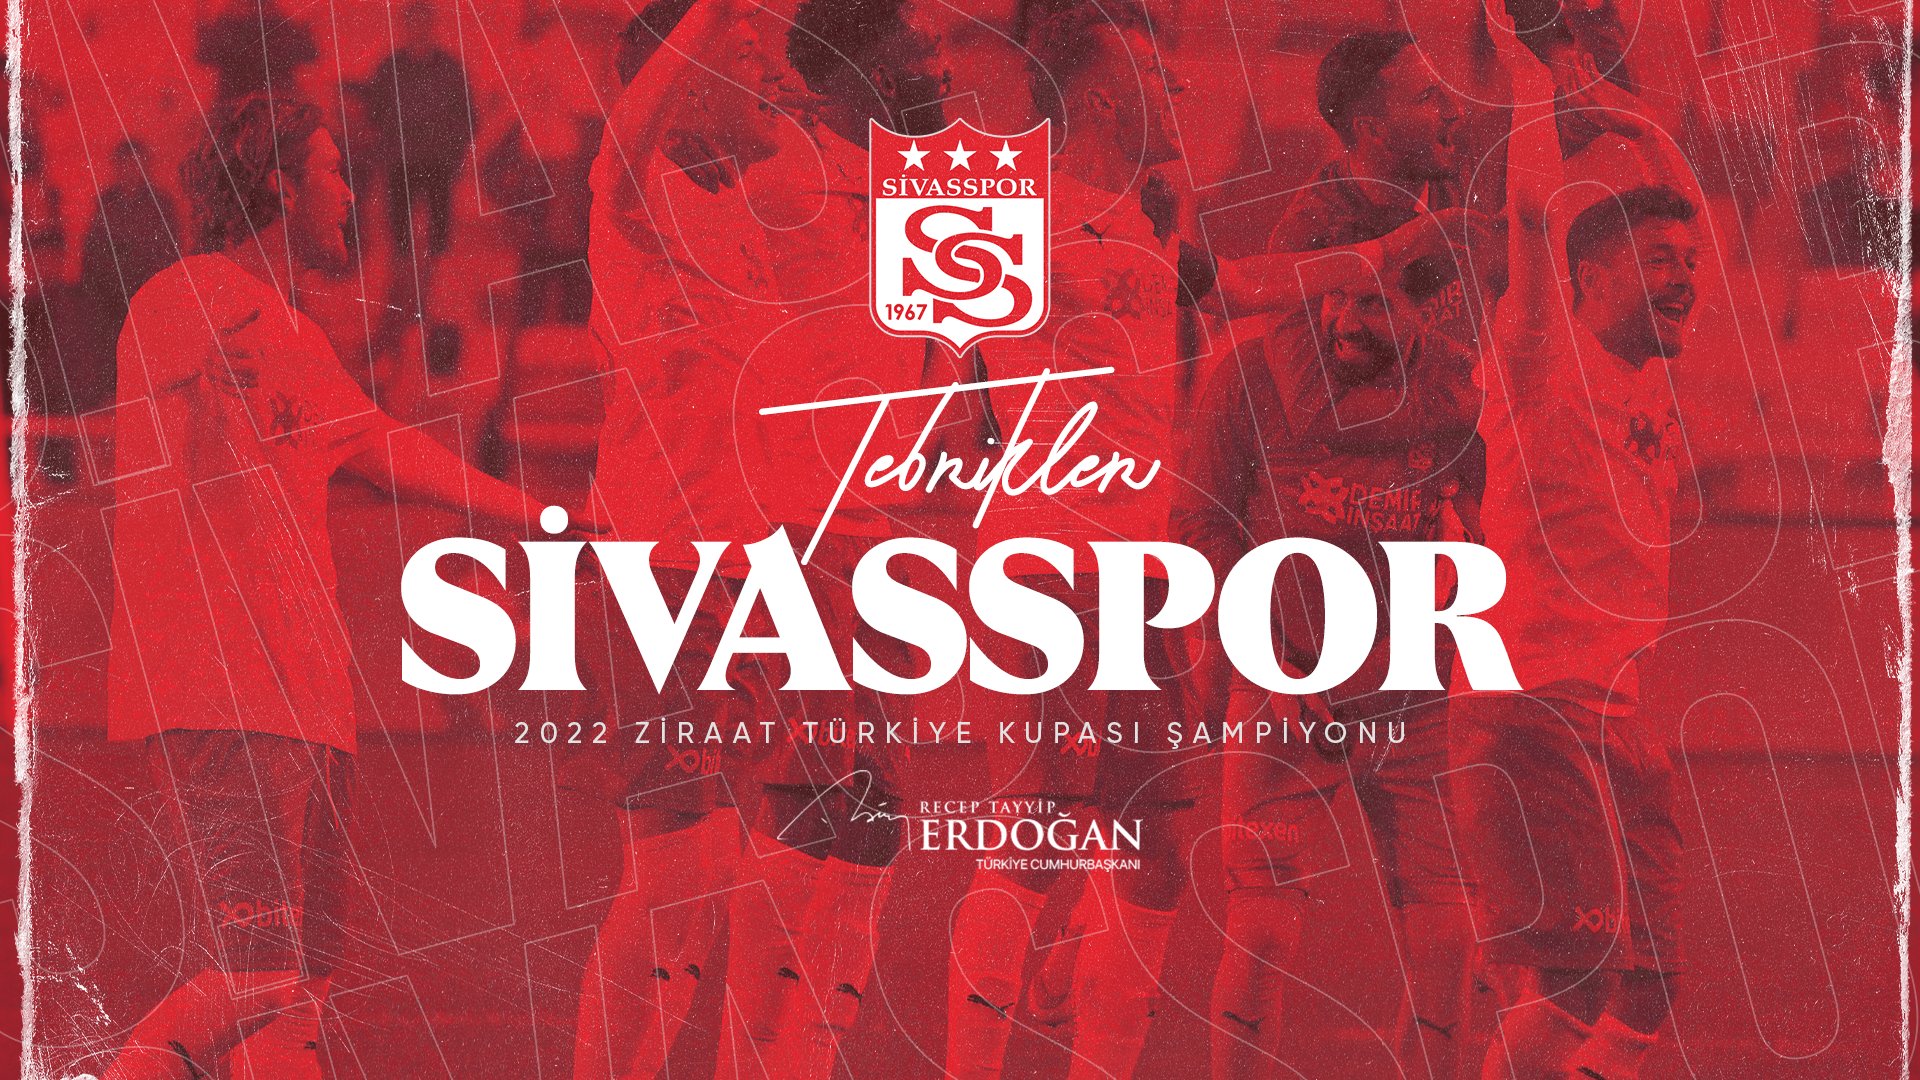 Ziraat Türkiye Kupası’nı Kazanan Sivasspor Oldu